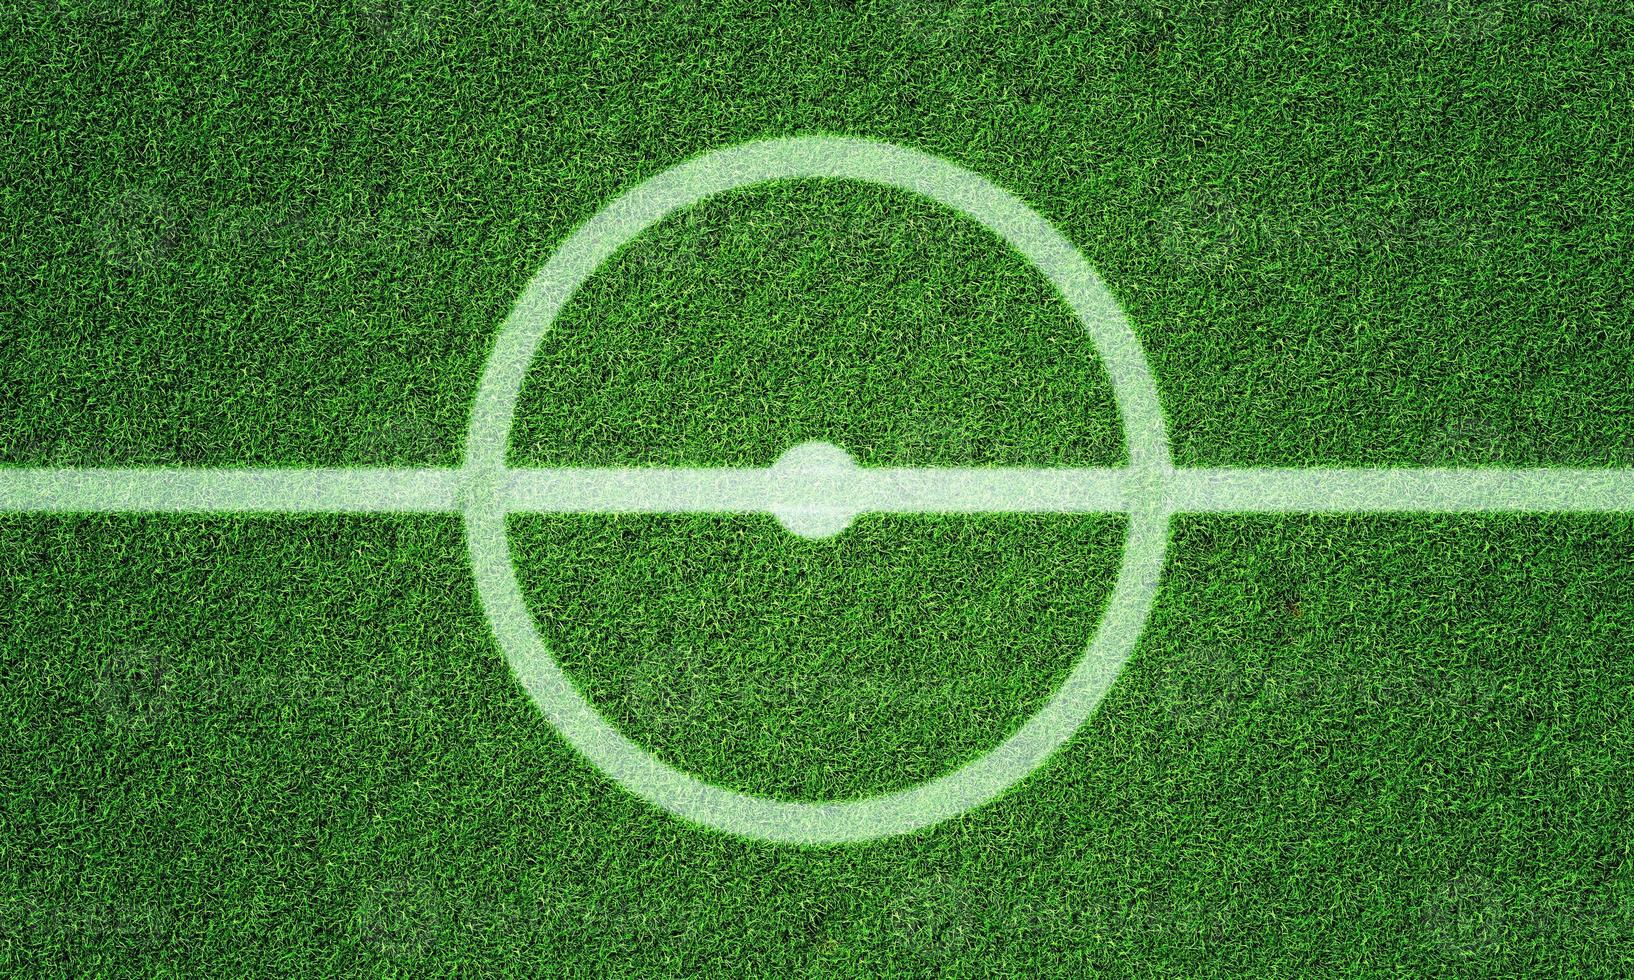 terrain de football dans le stade de football avec motif d'herbe en ligne et cercle central. arrière-plan sportif et concept de papier peint athlétique. rendu 3d photo